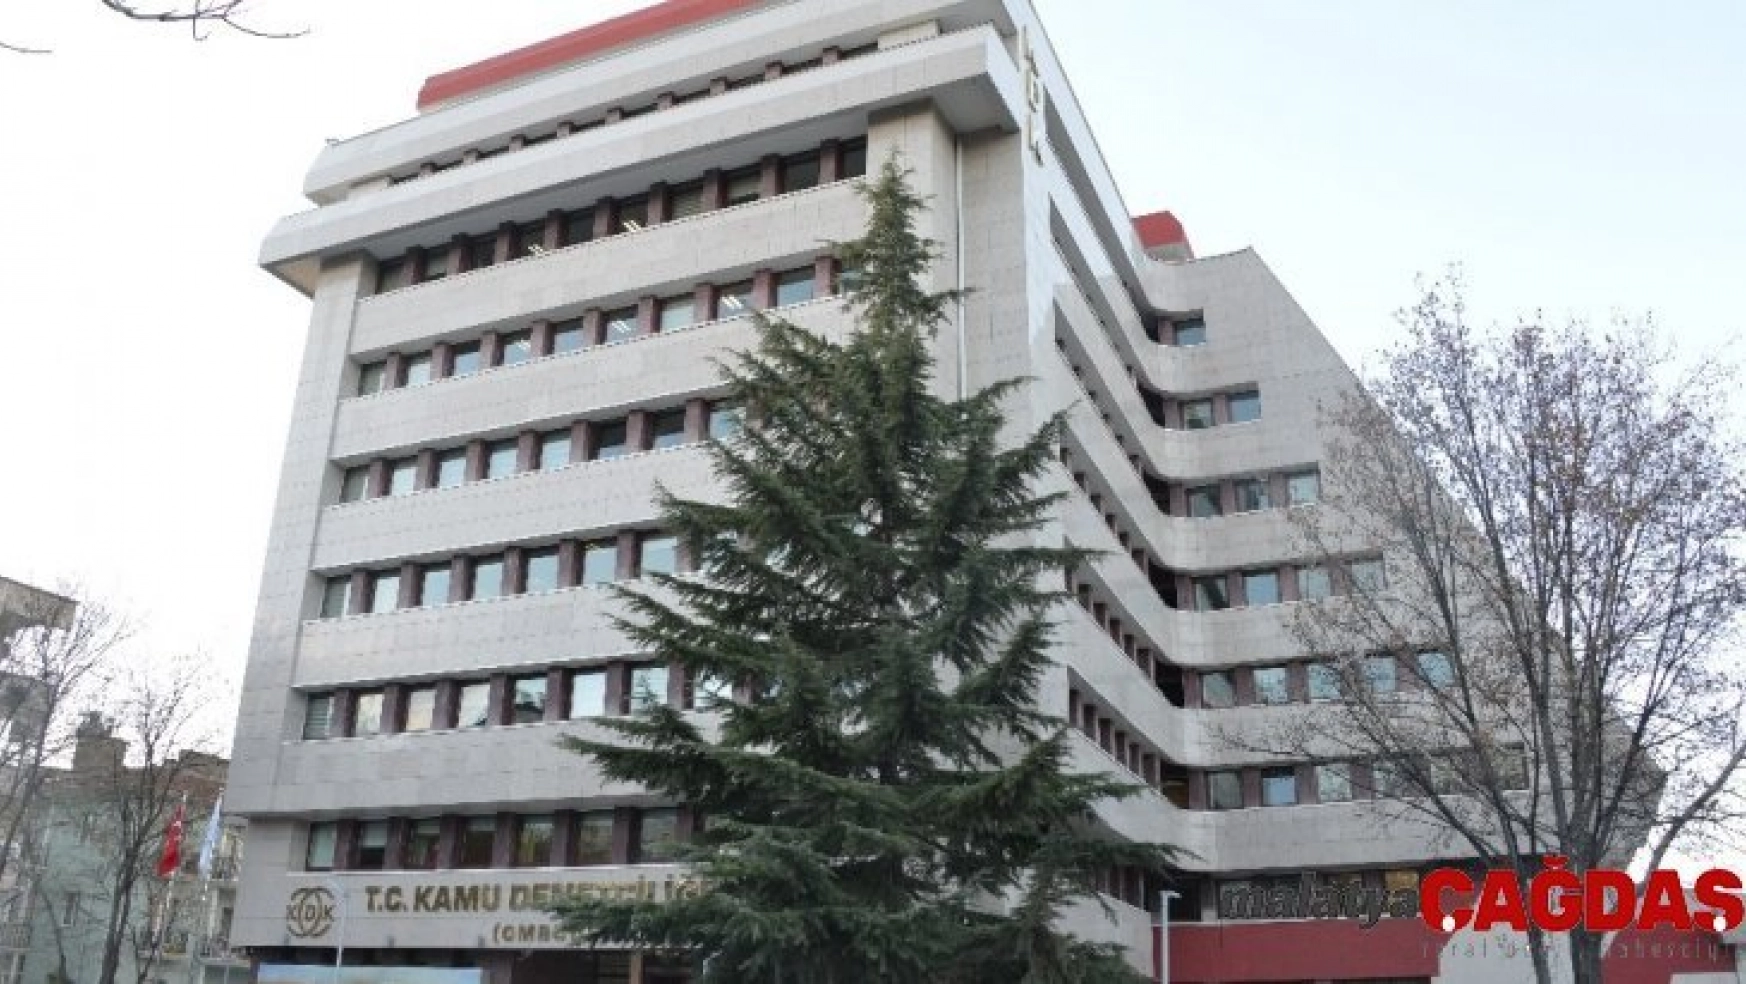 5 Bin liralık kaçak elektrik faturası kesilen vatandaşın yardımına KDK koştu